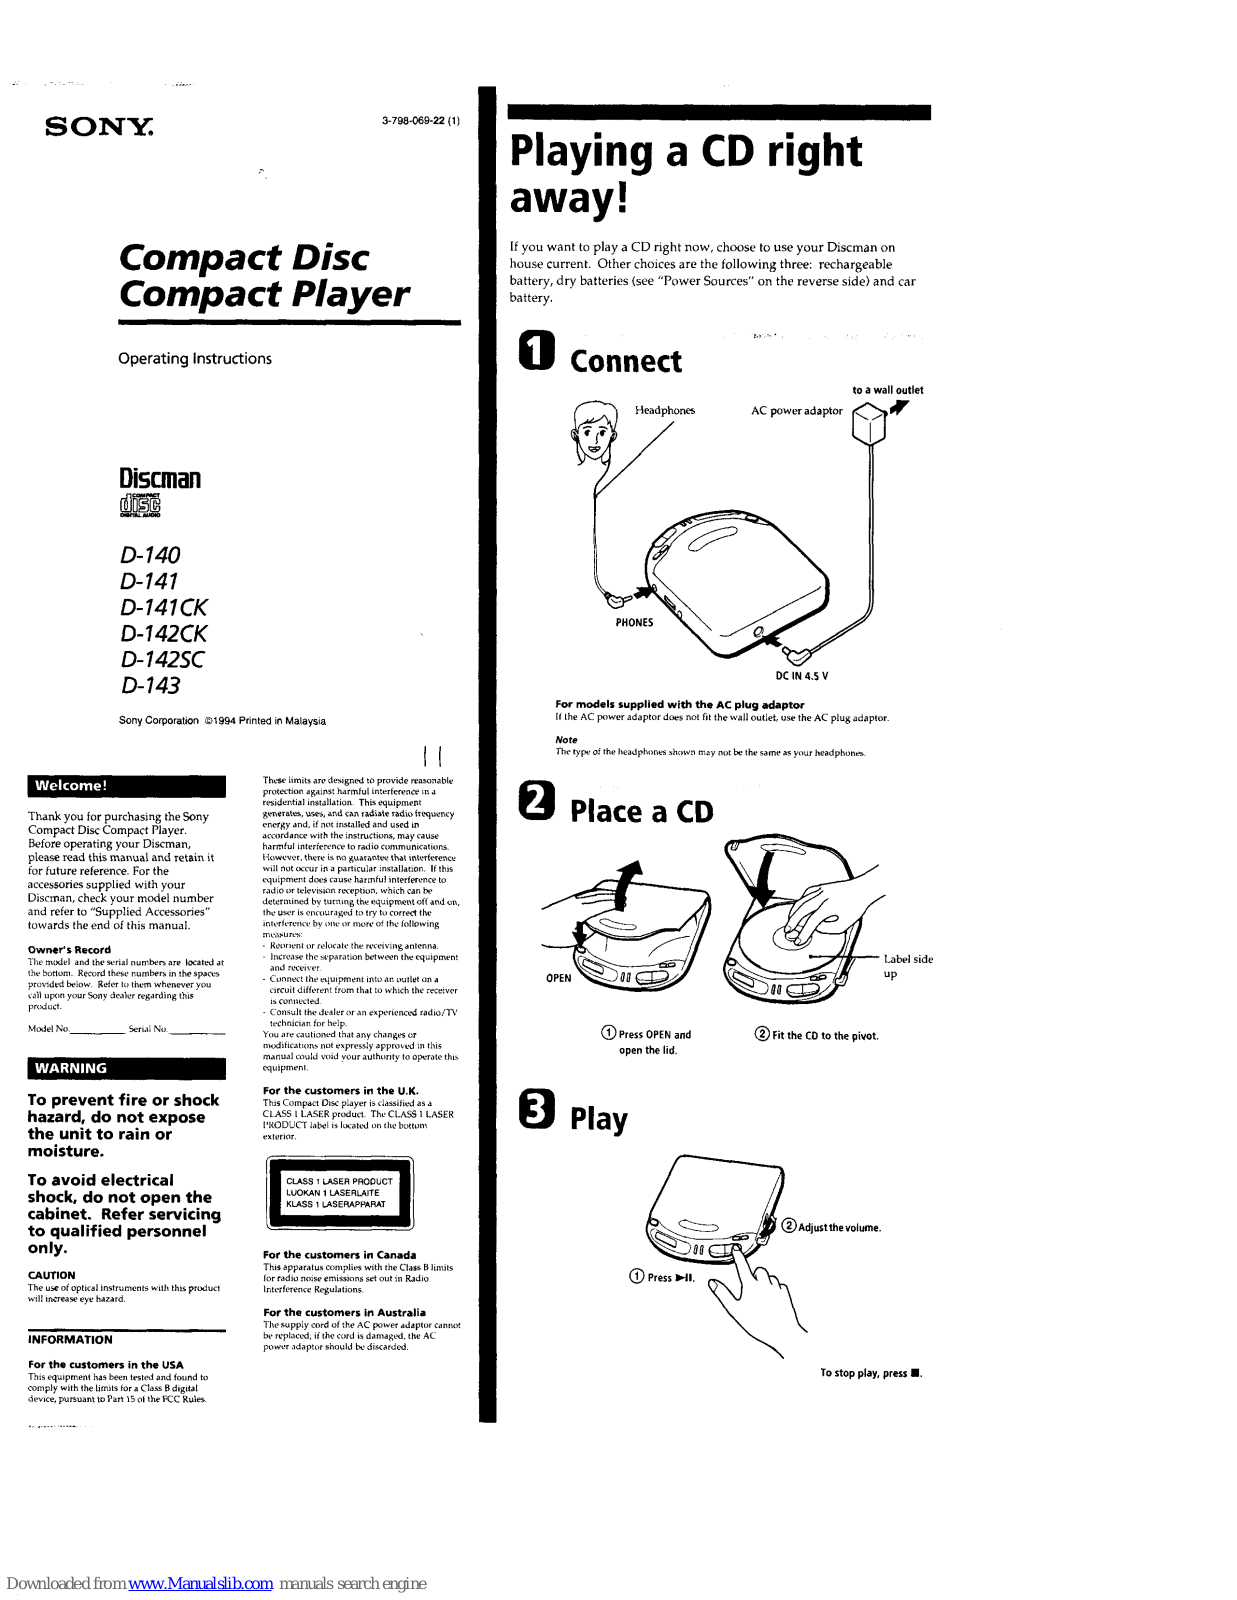 Sony D-140, D-141, D-141CK, D-142CK, D-142SC Operating Instructions Manual